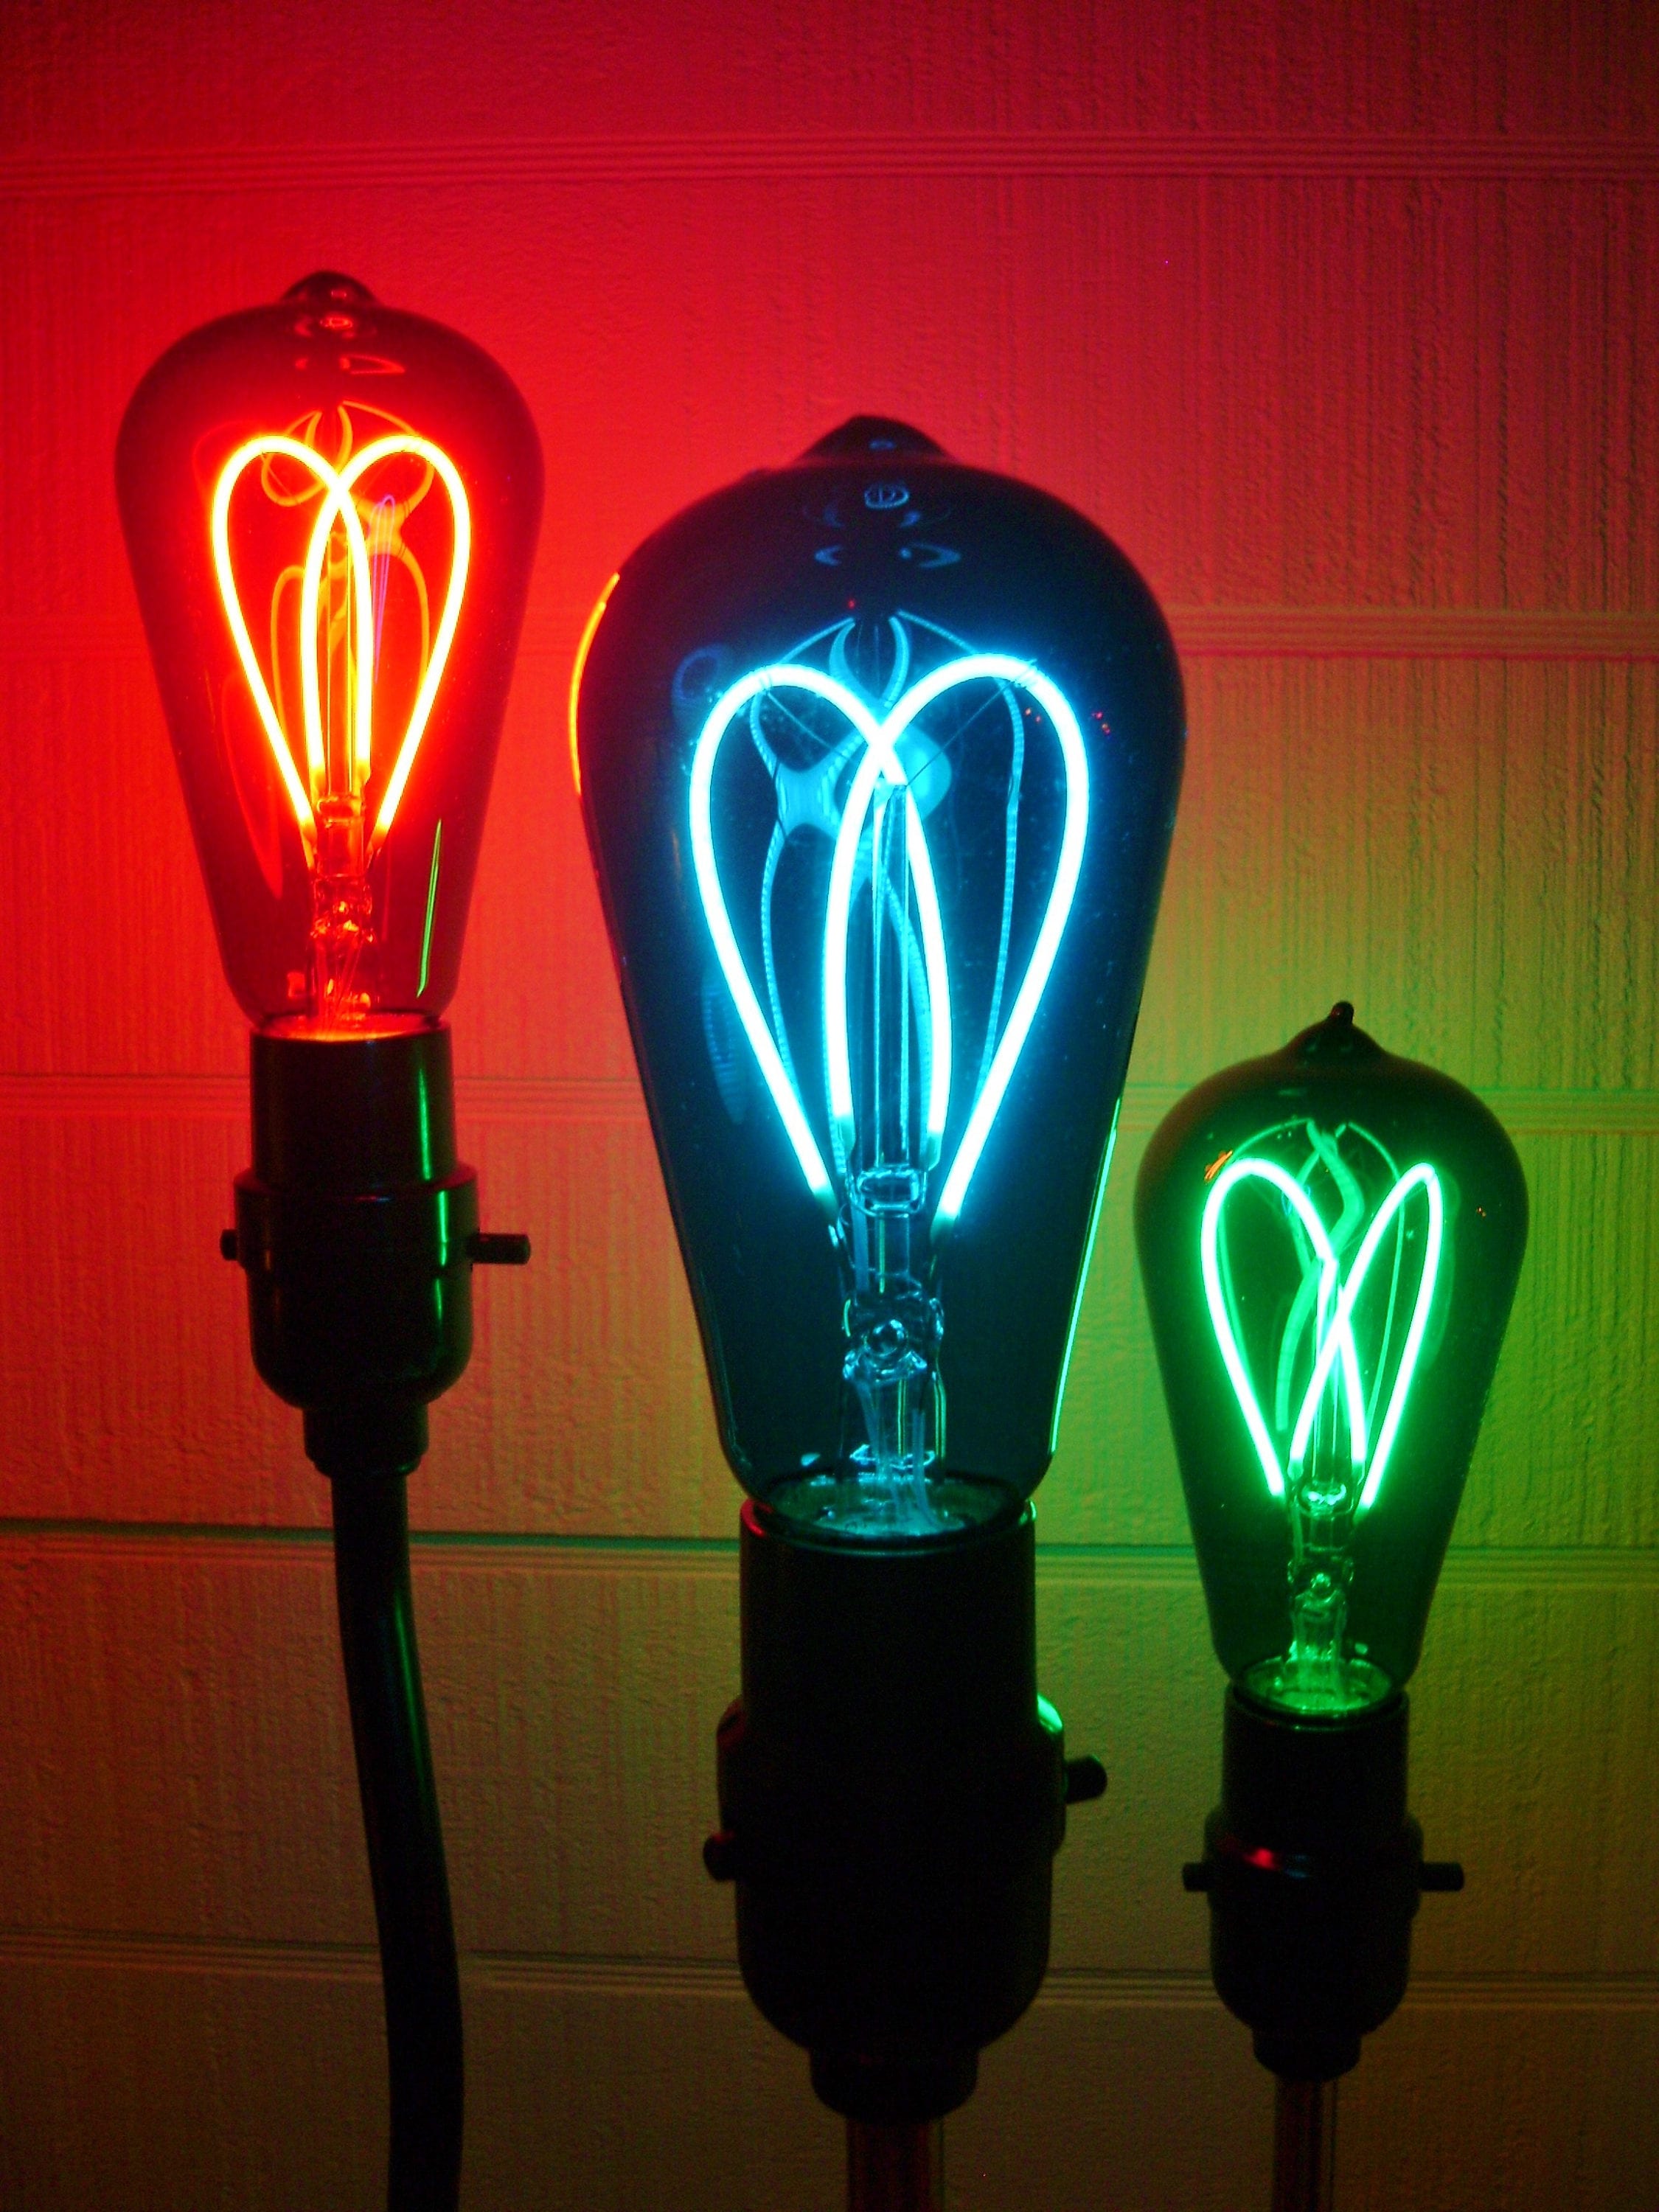 Ampoule LED à filament spirale, look vintage, E27, 2,5 W, 220 V, 12,5x17 cm